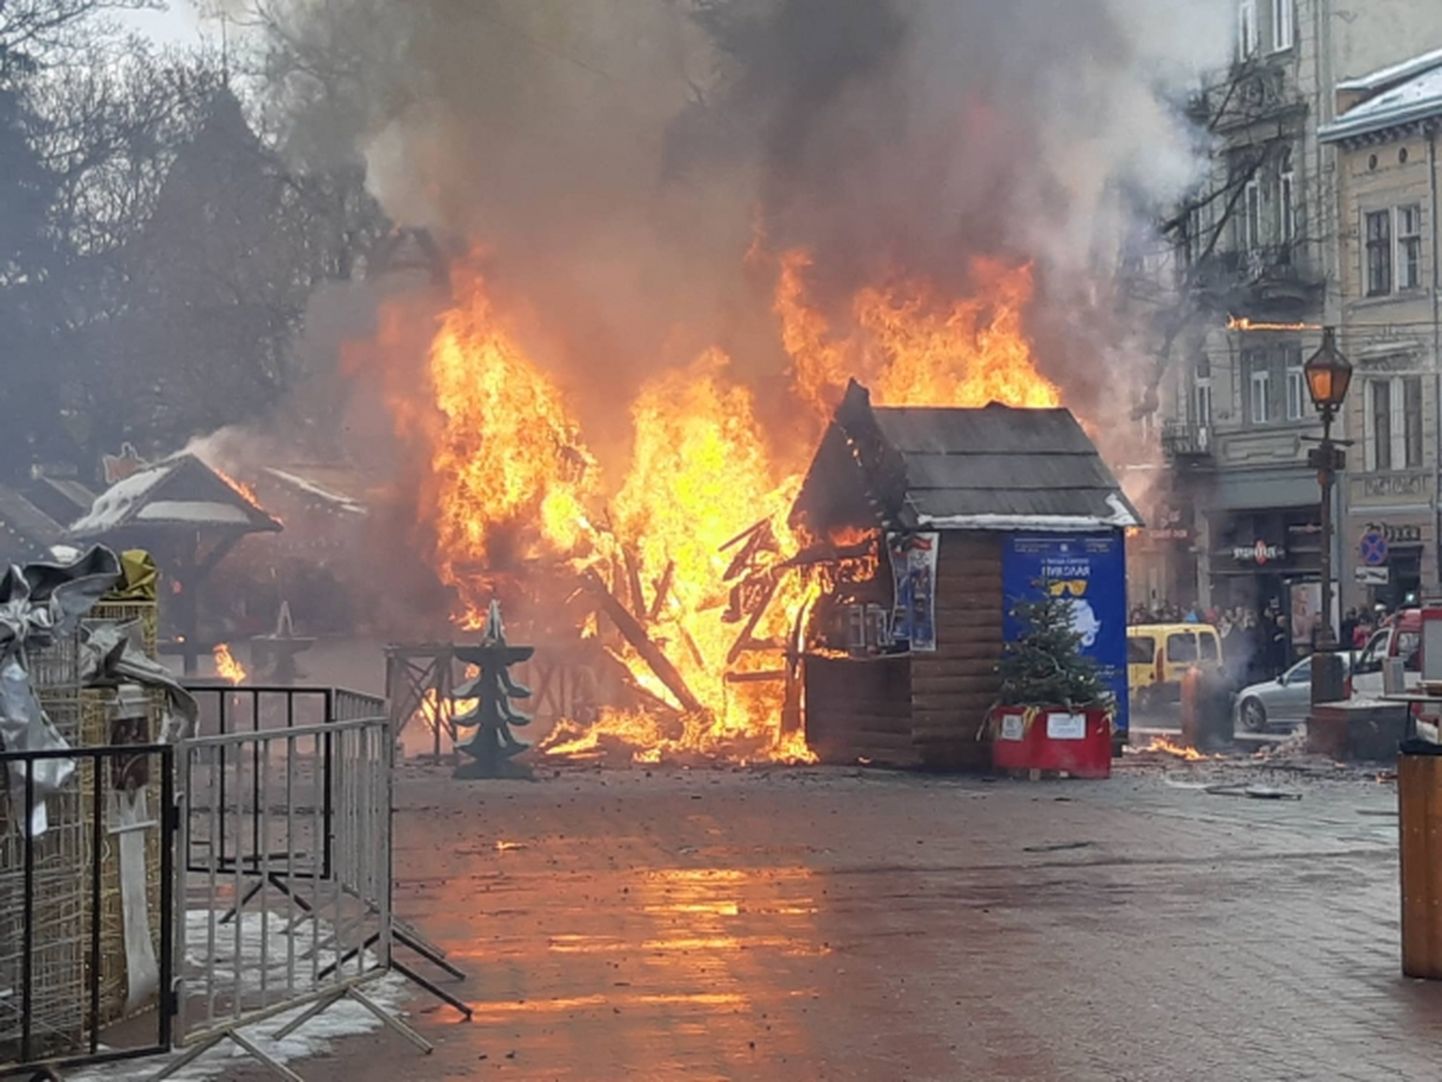 Ļvovas Ziemassvētku tirdziņa pēc sprādziena aizdegušās tirdzniecībai izveidotās būdiņas